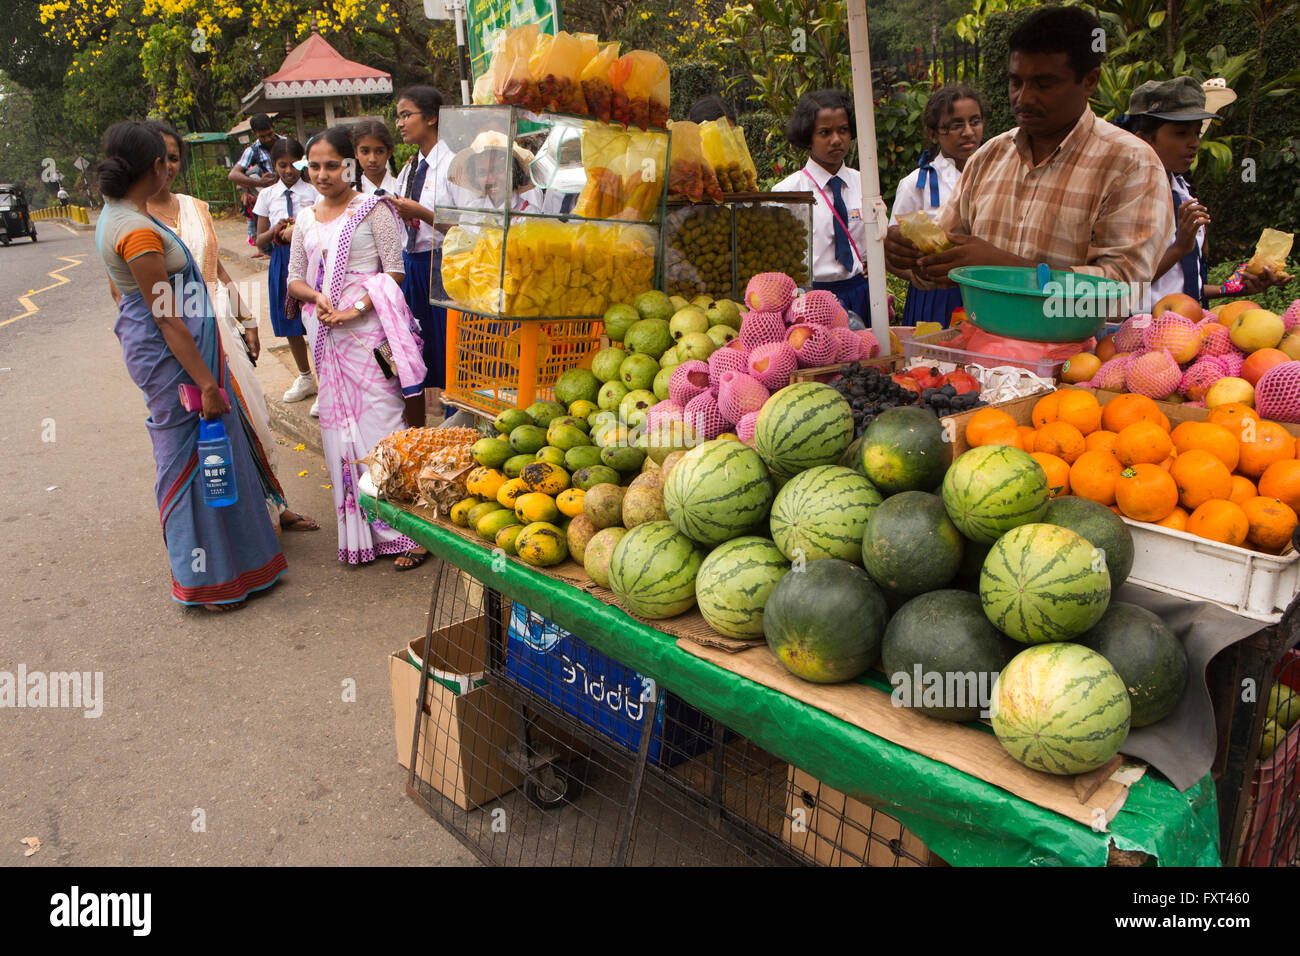 Sri Lanka, Kandy, Peradeniya, fruit stall outside Botanical Gardens Stock Photo